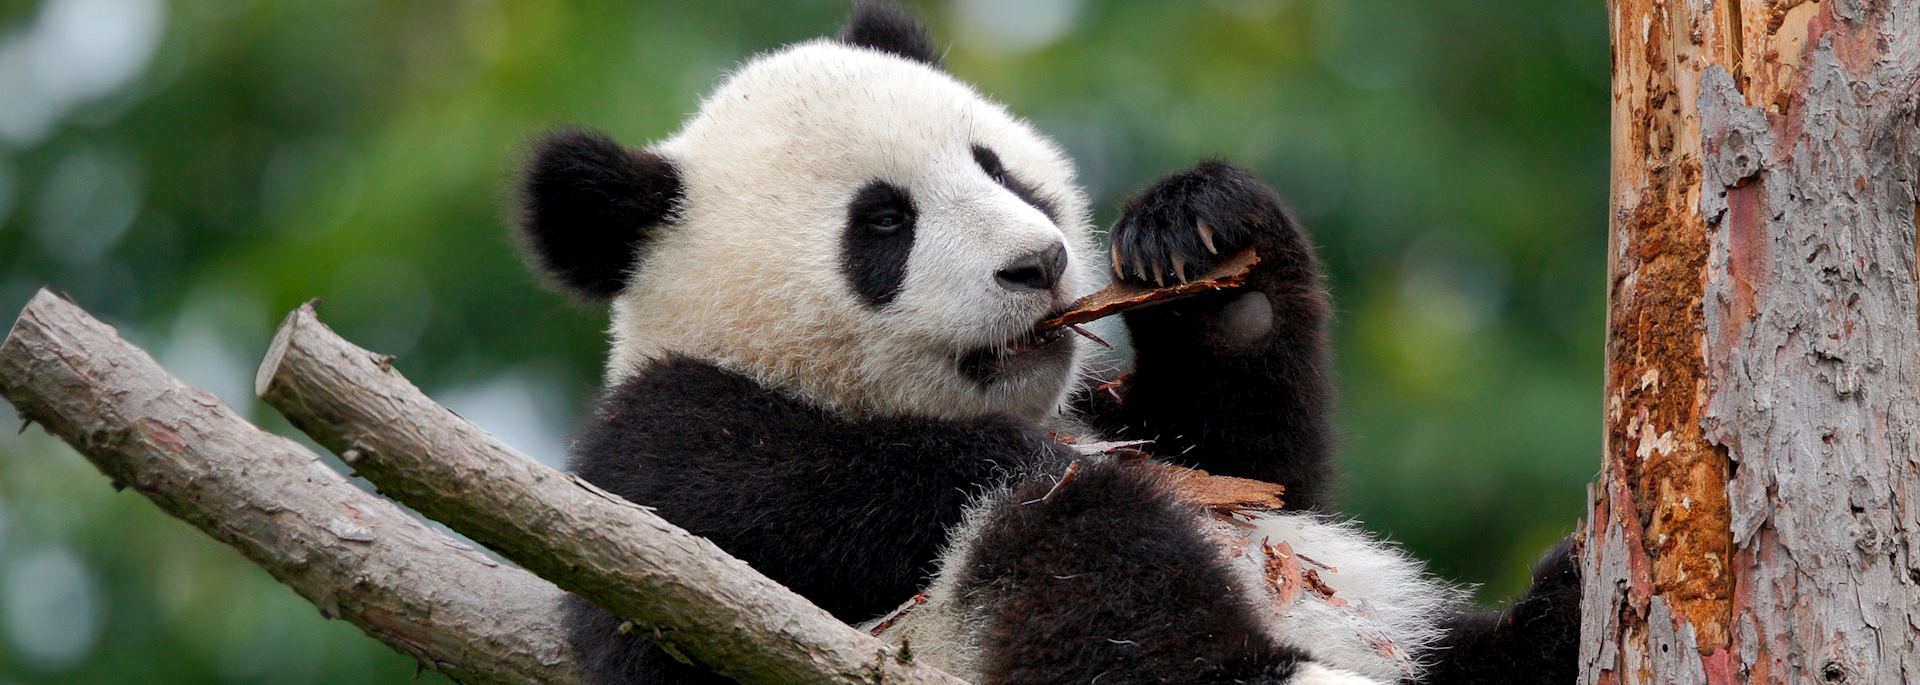 Young giant panda, Chengdu